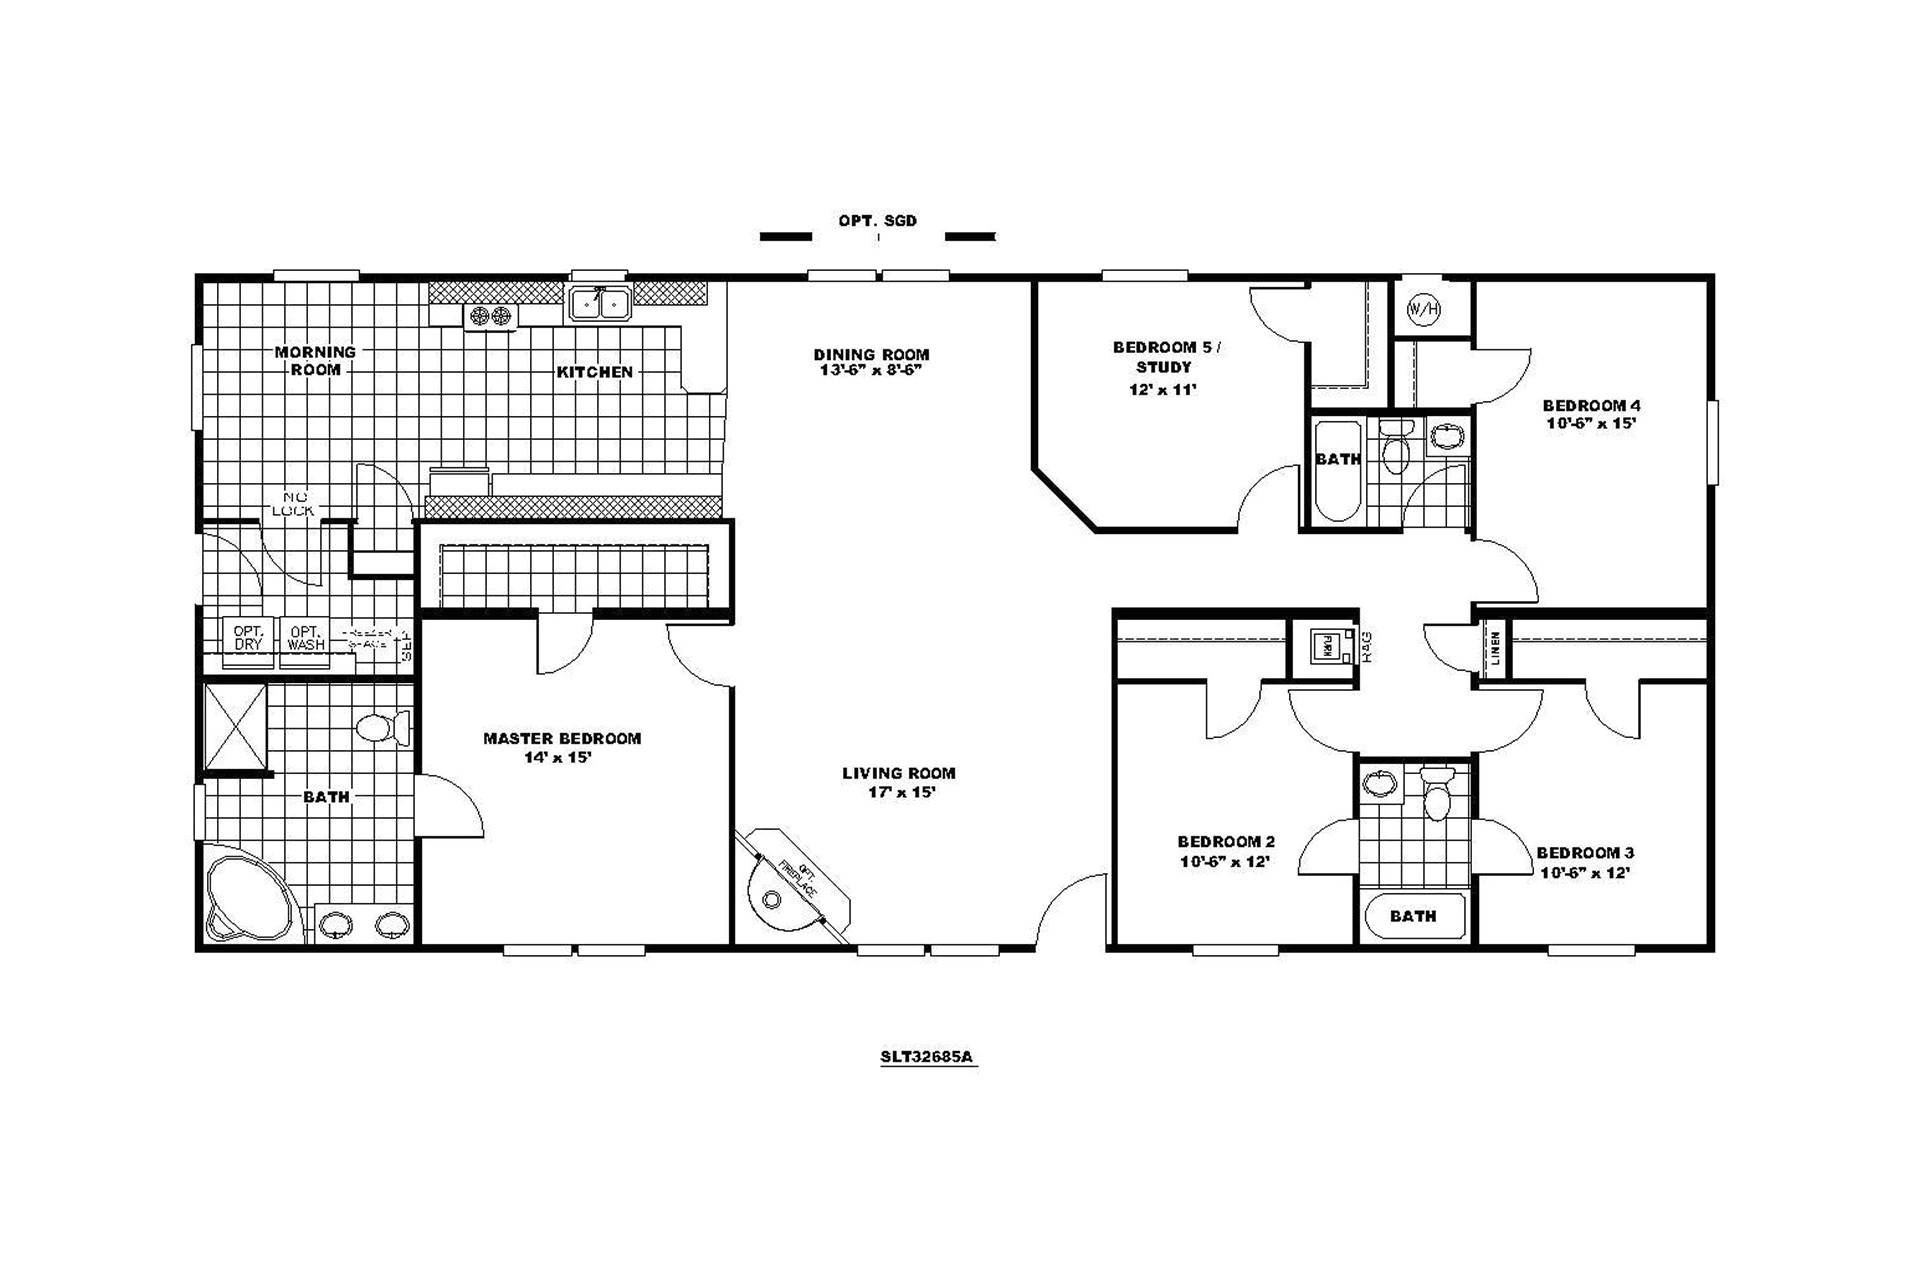 6 bedroom modular home floor plans